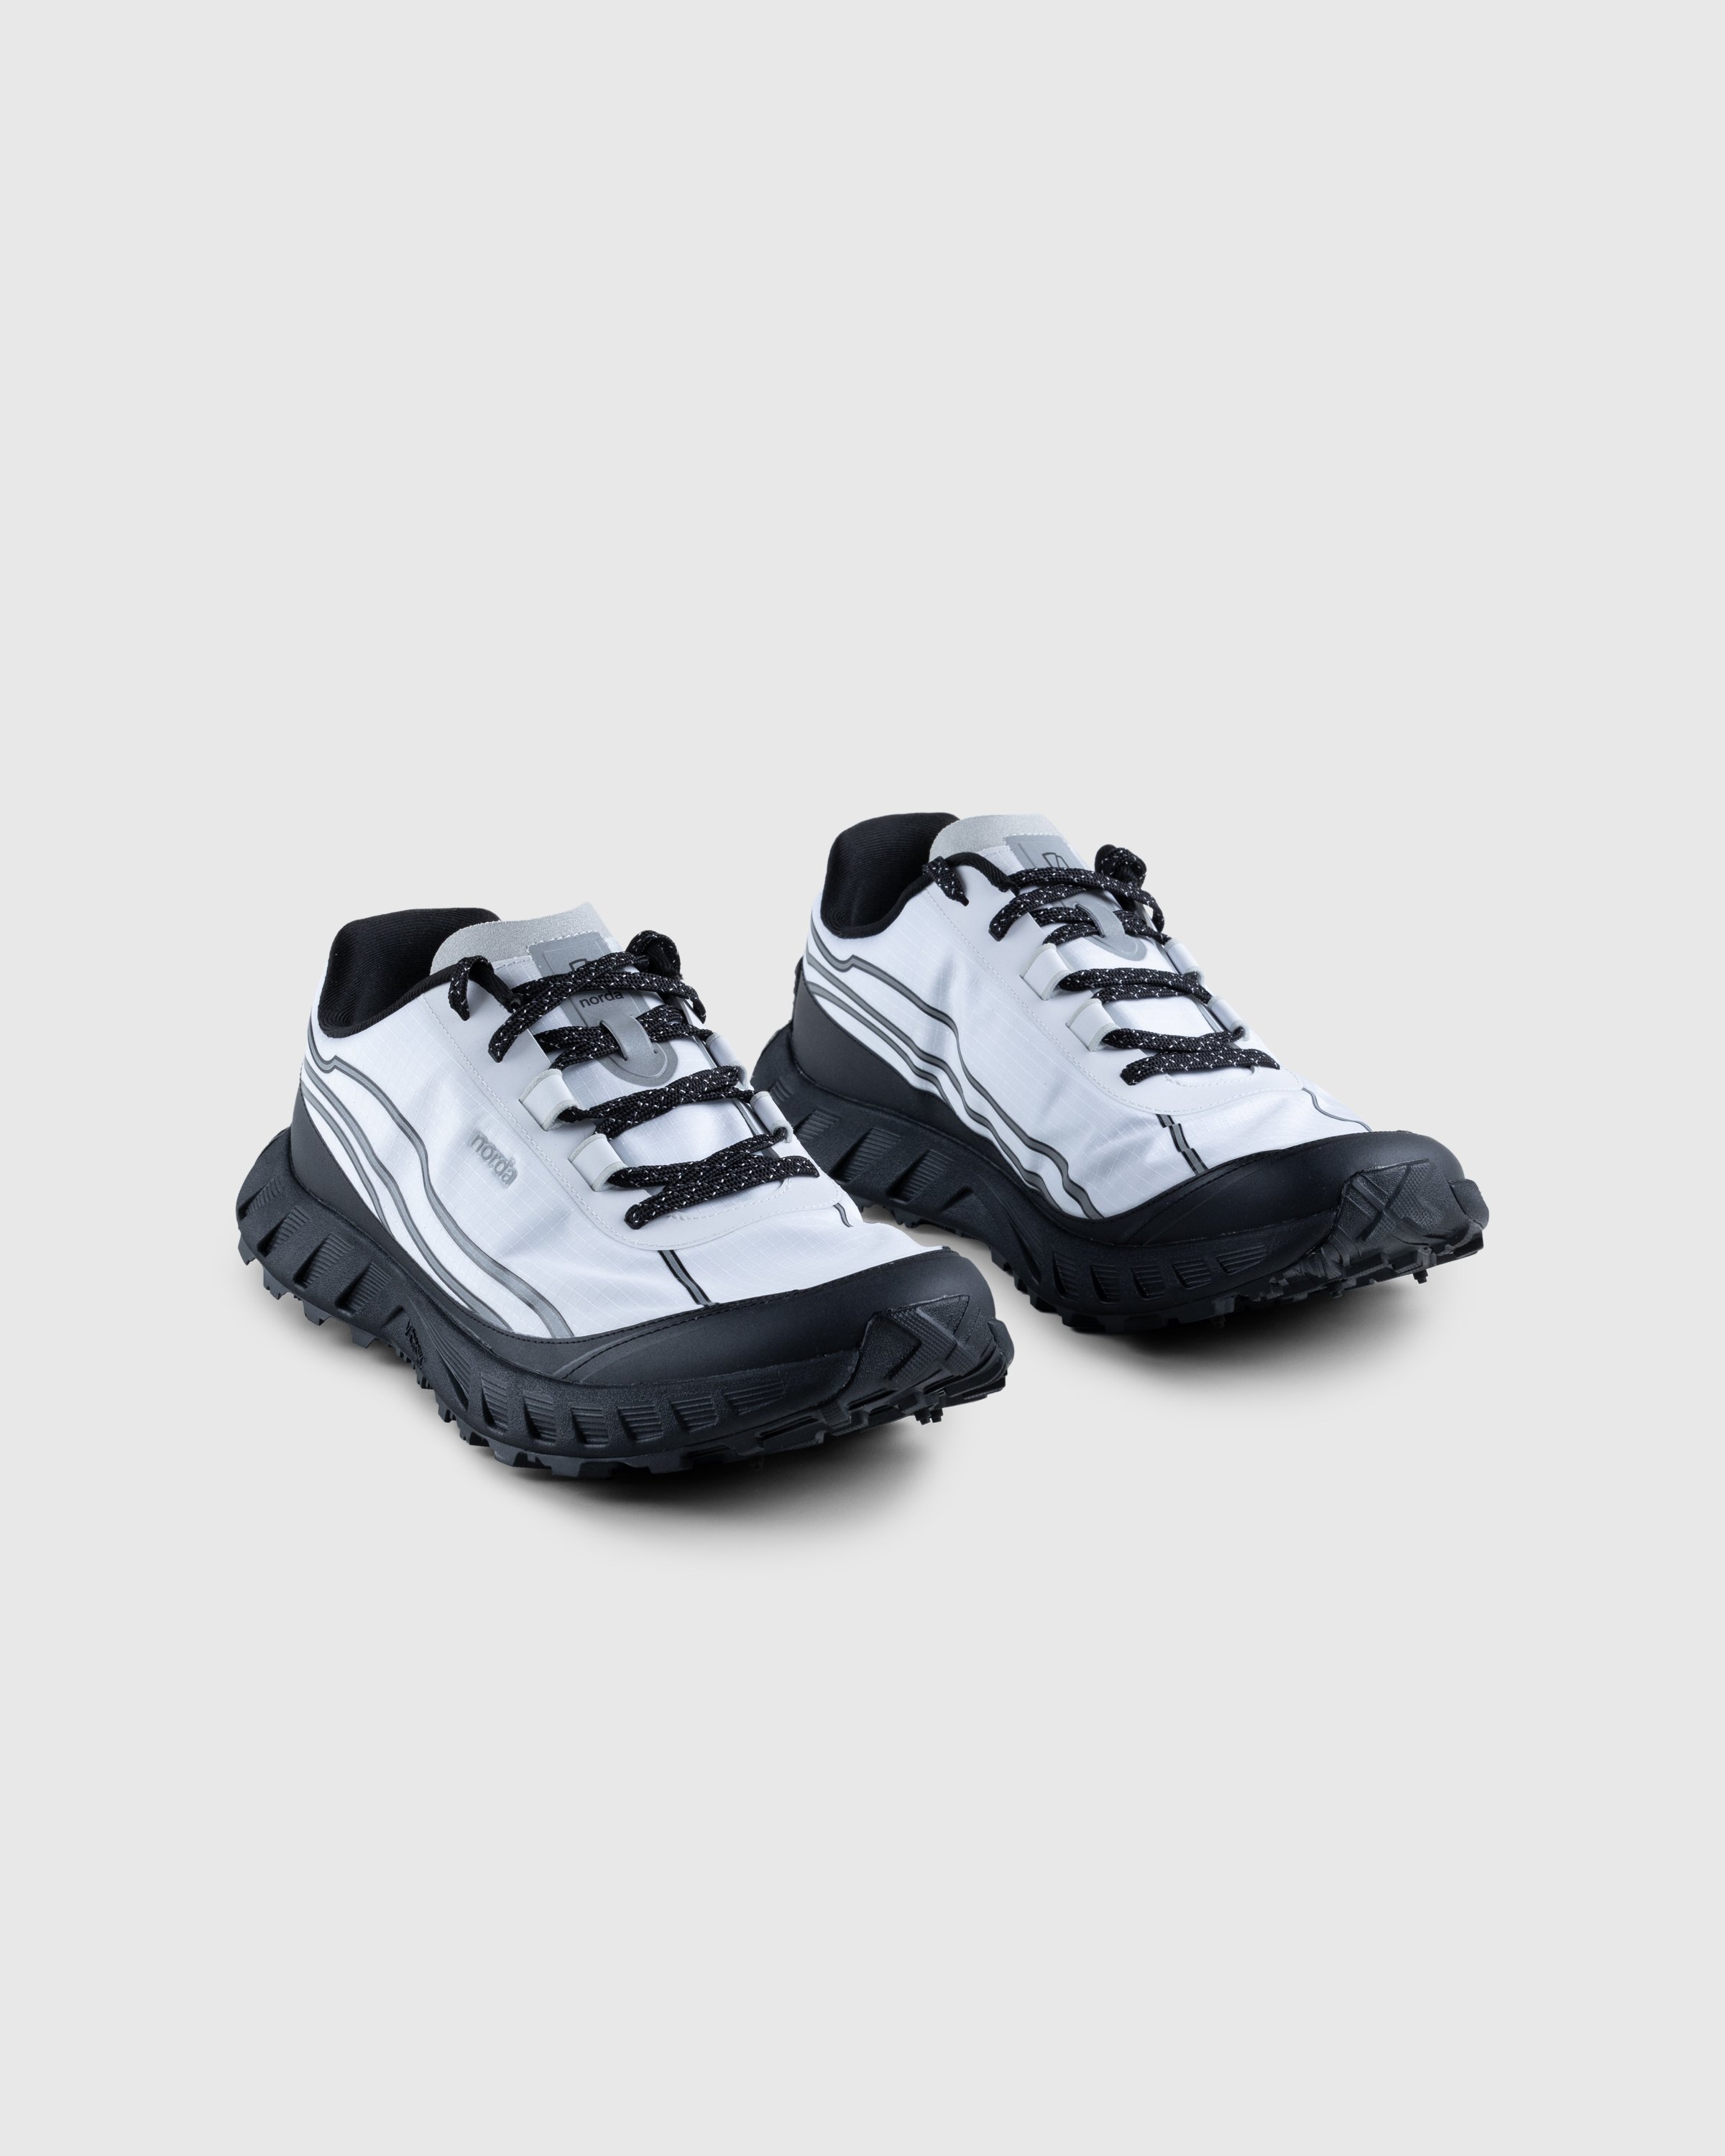 Norda - 002 M WHT/TP - Footwear - White - Image 3